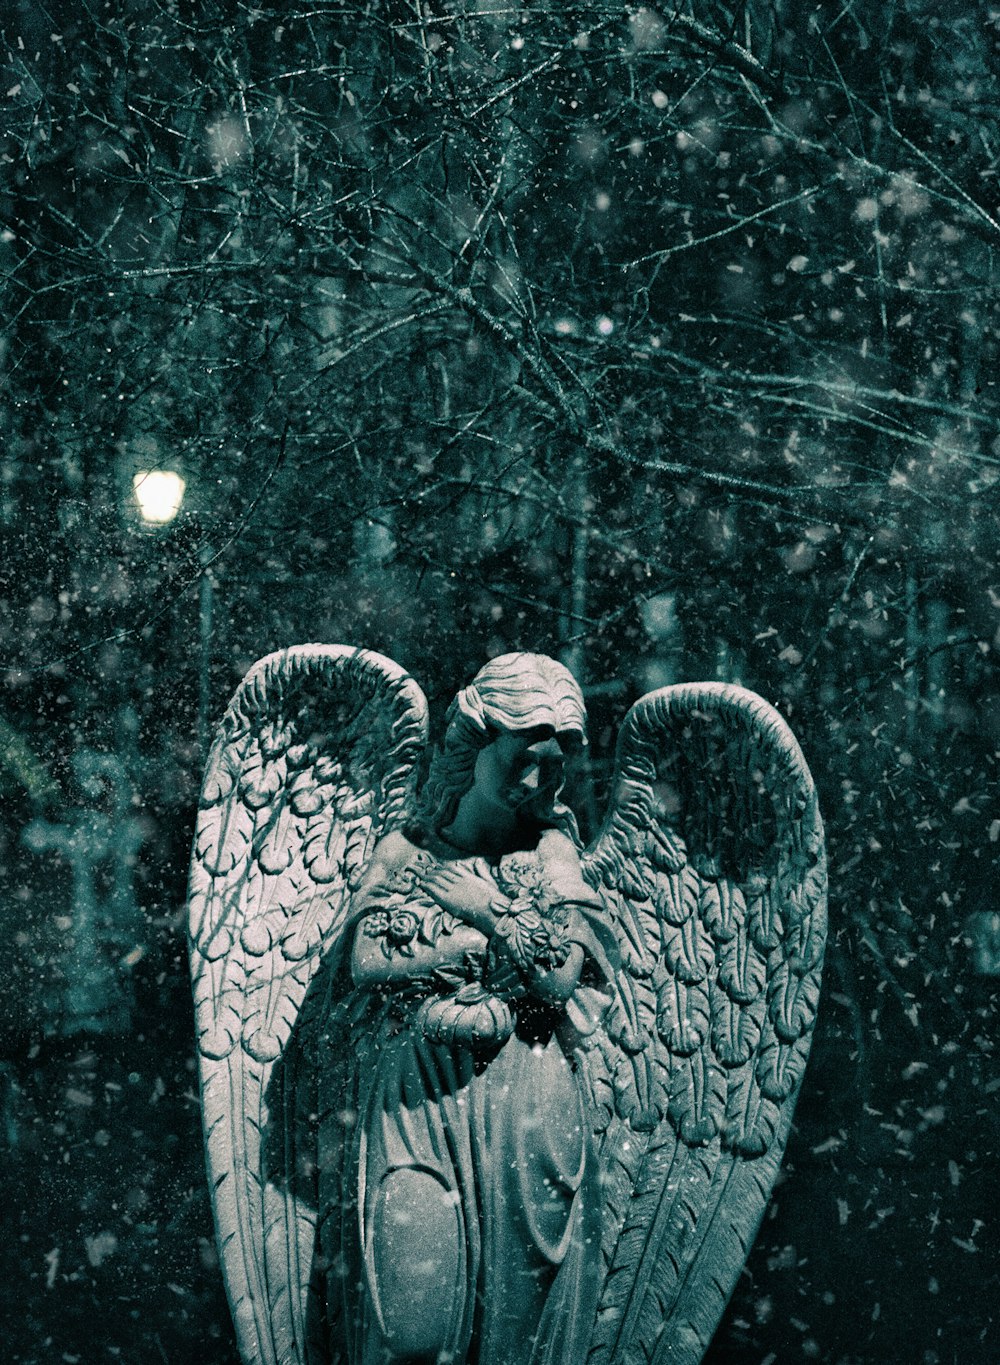 angel statue under white string lights